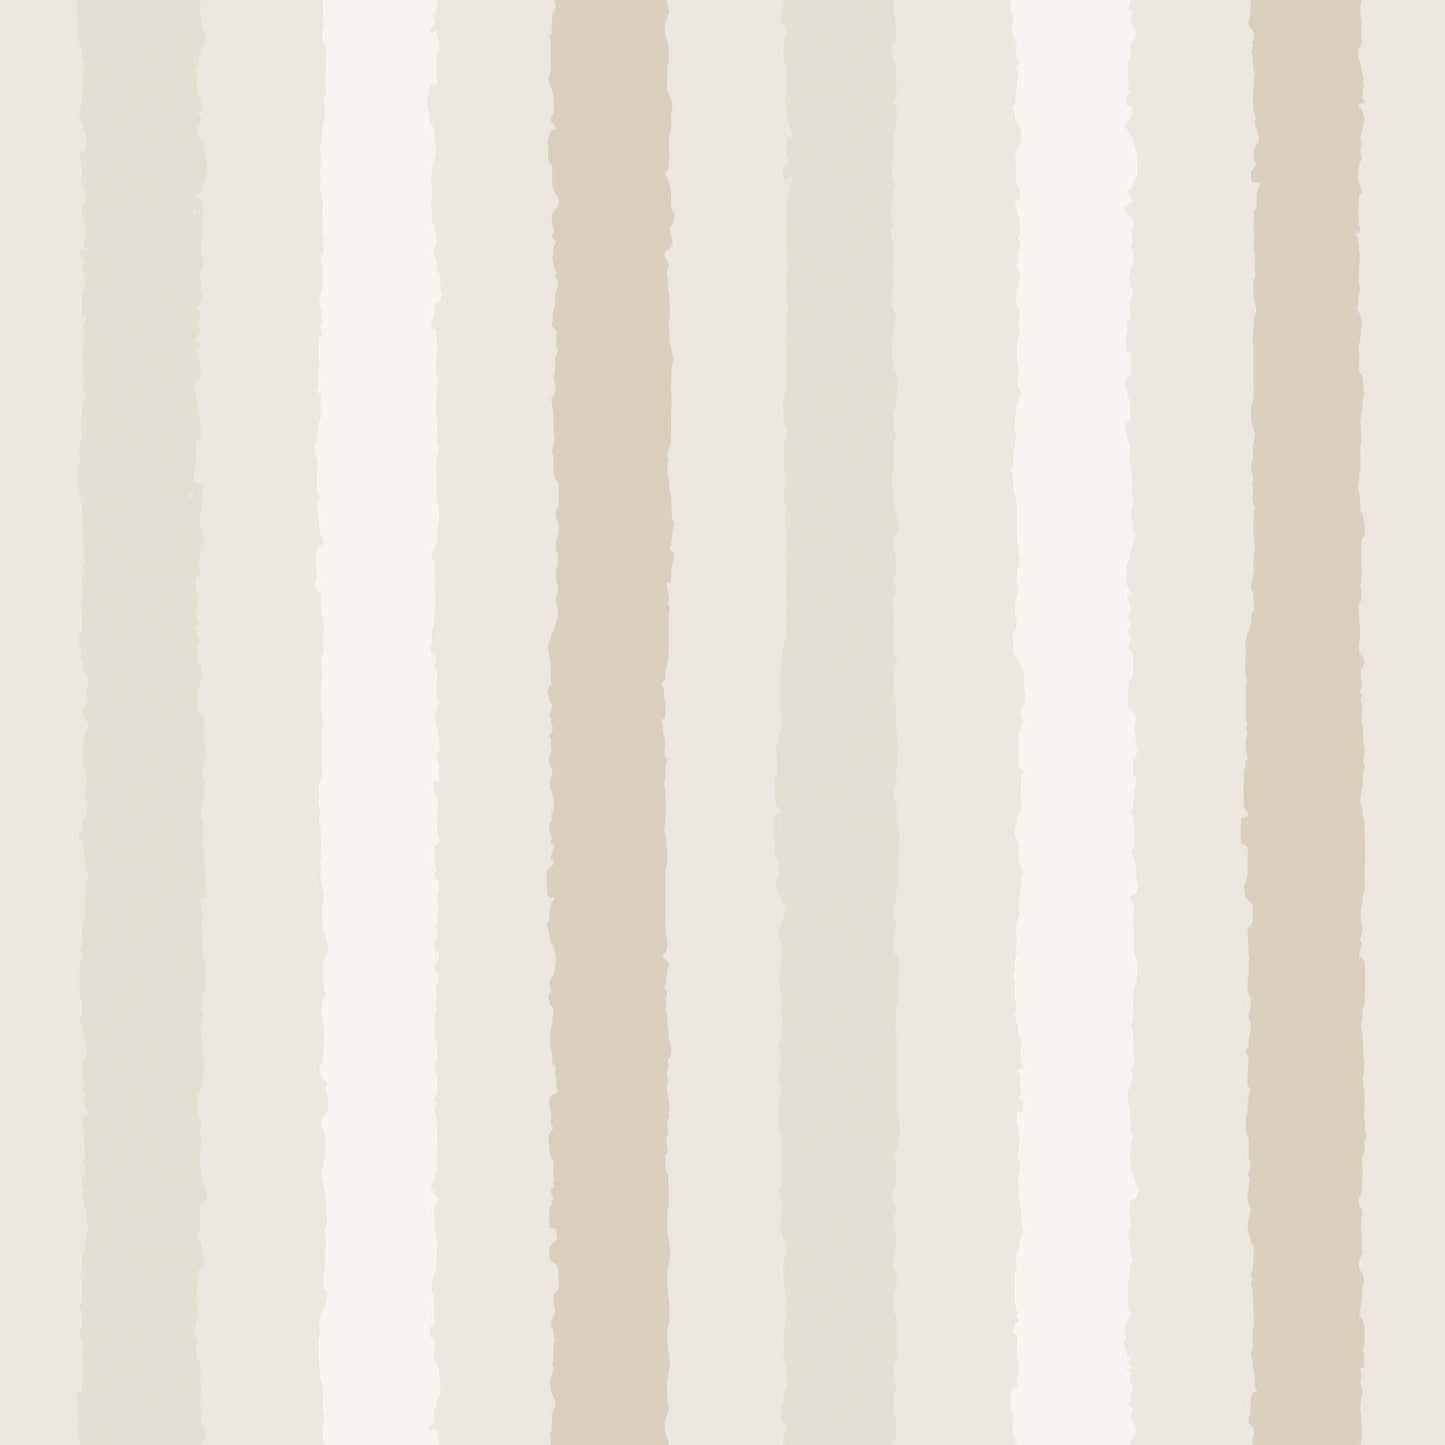 Close up featuring Iris + Sea Bold Stripe- Neutral - a striped pattern